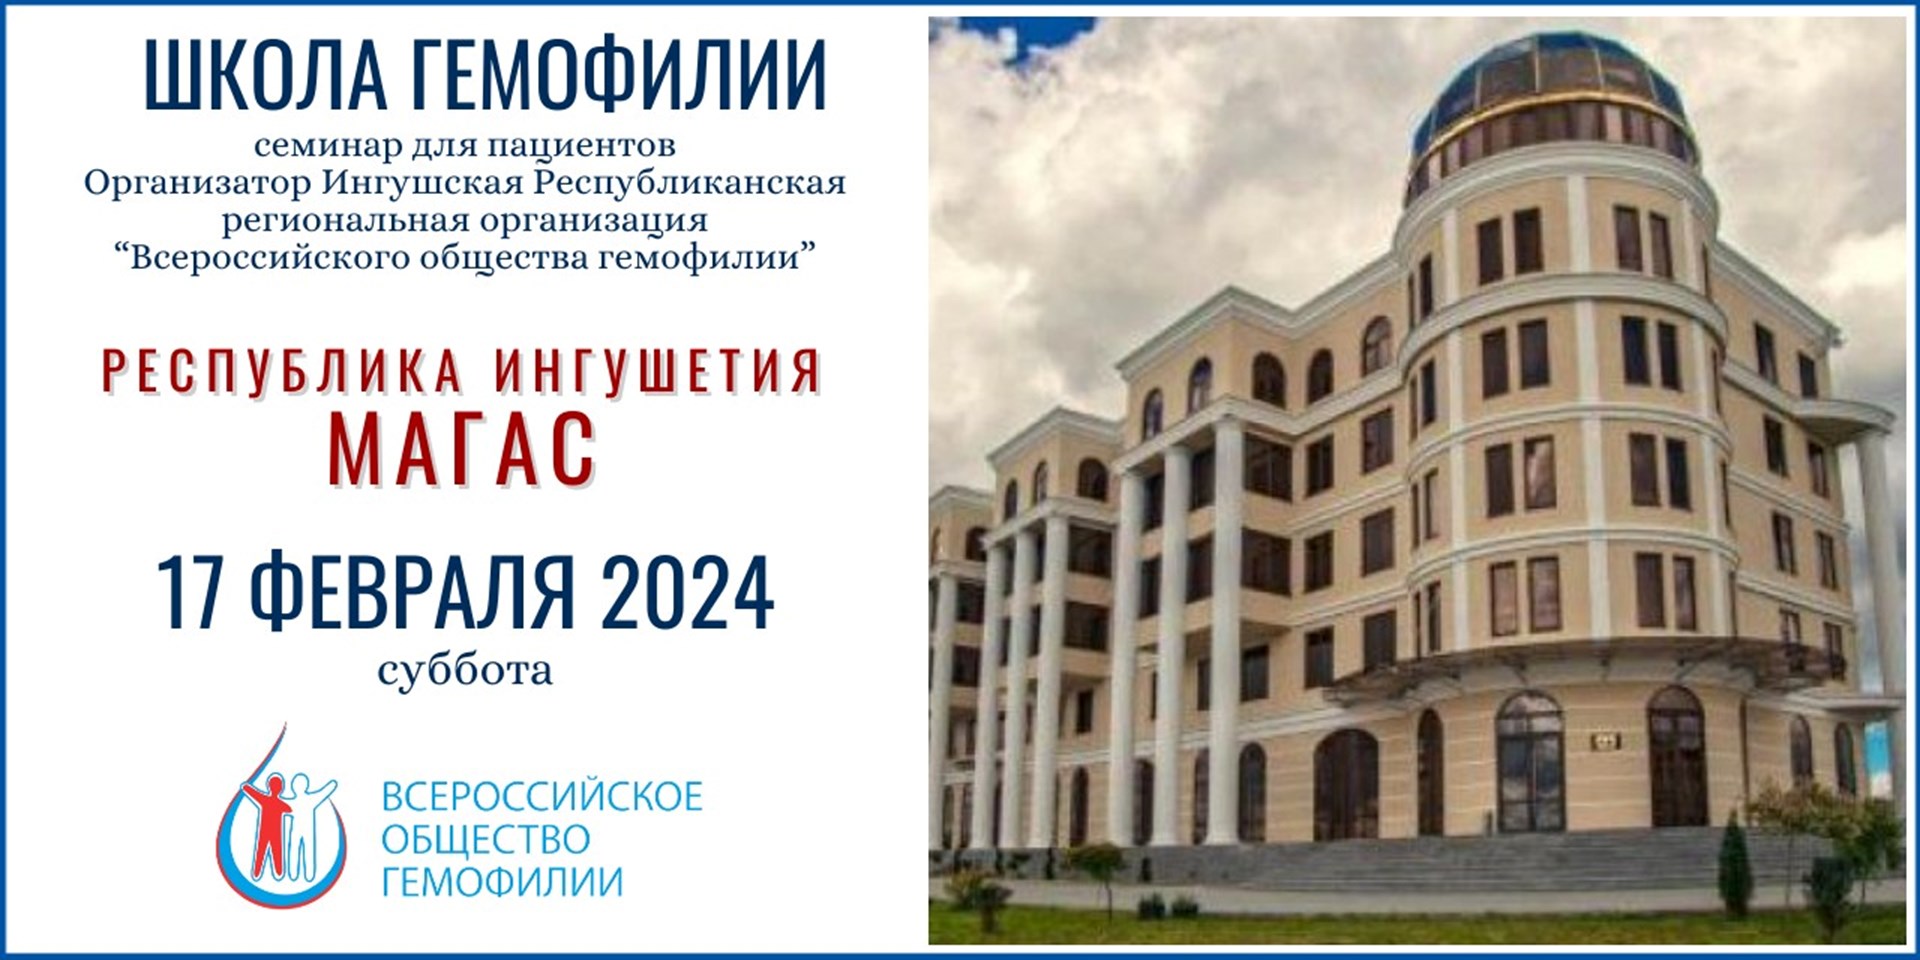 Магас. Анонс! Школа гемофилии в Республике Ингушетия запланирована на 17 февраля 2024